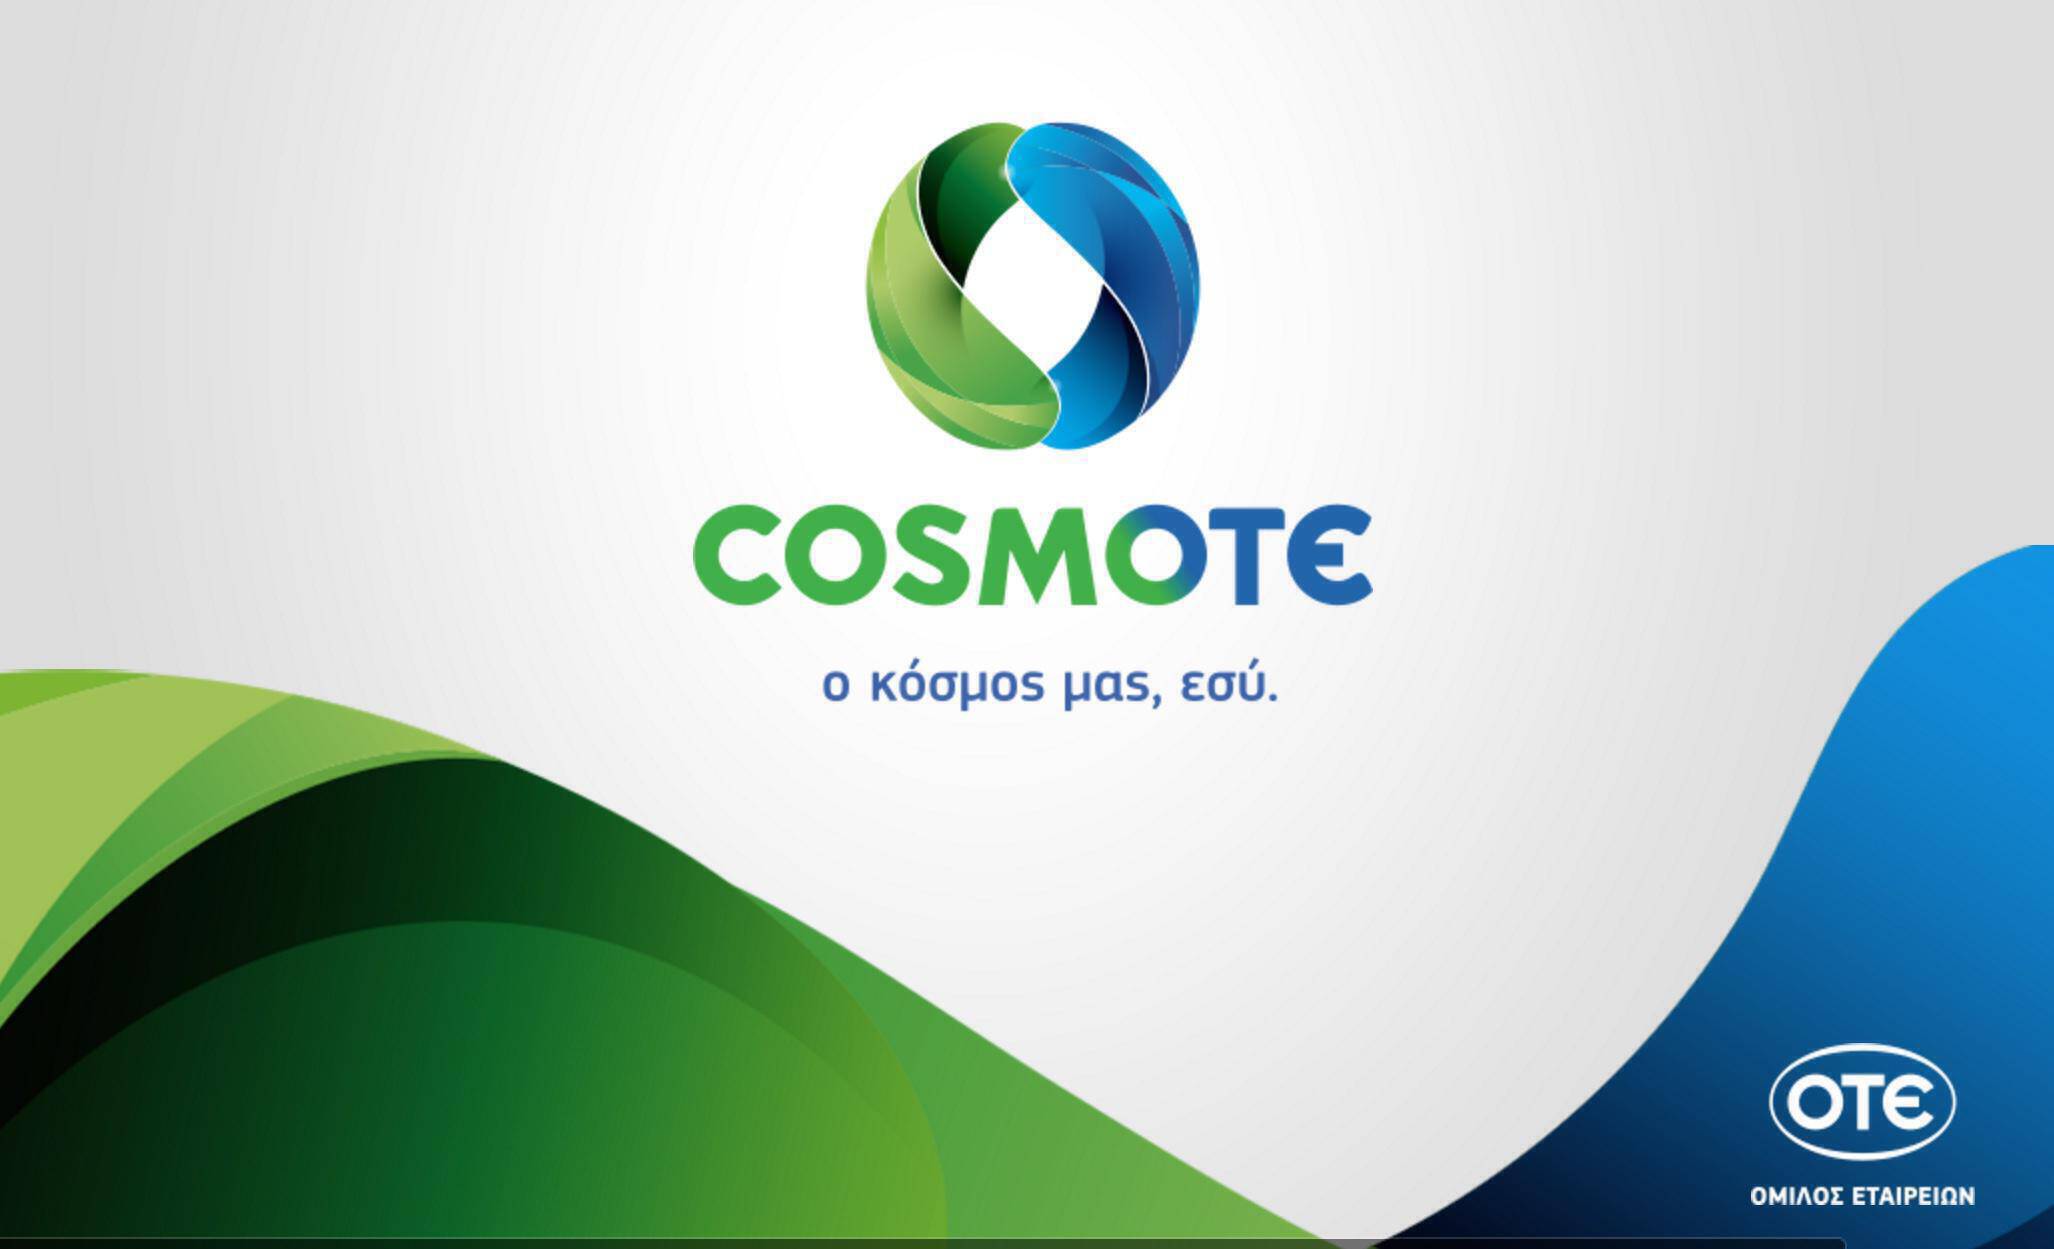 Cosmote: Νέα ενημέρωση για απόπειρες εξαπάτησης των συνδρομητών της!